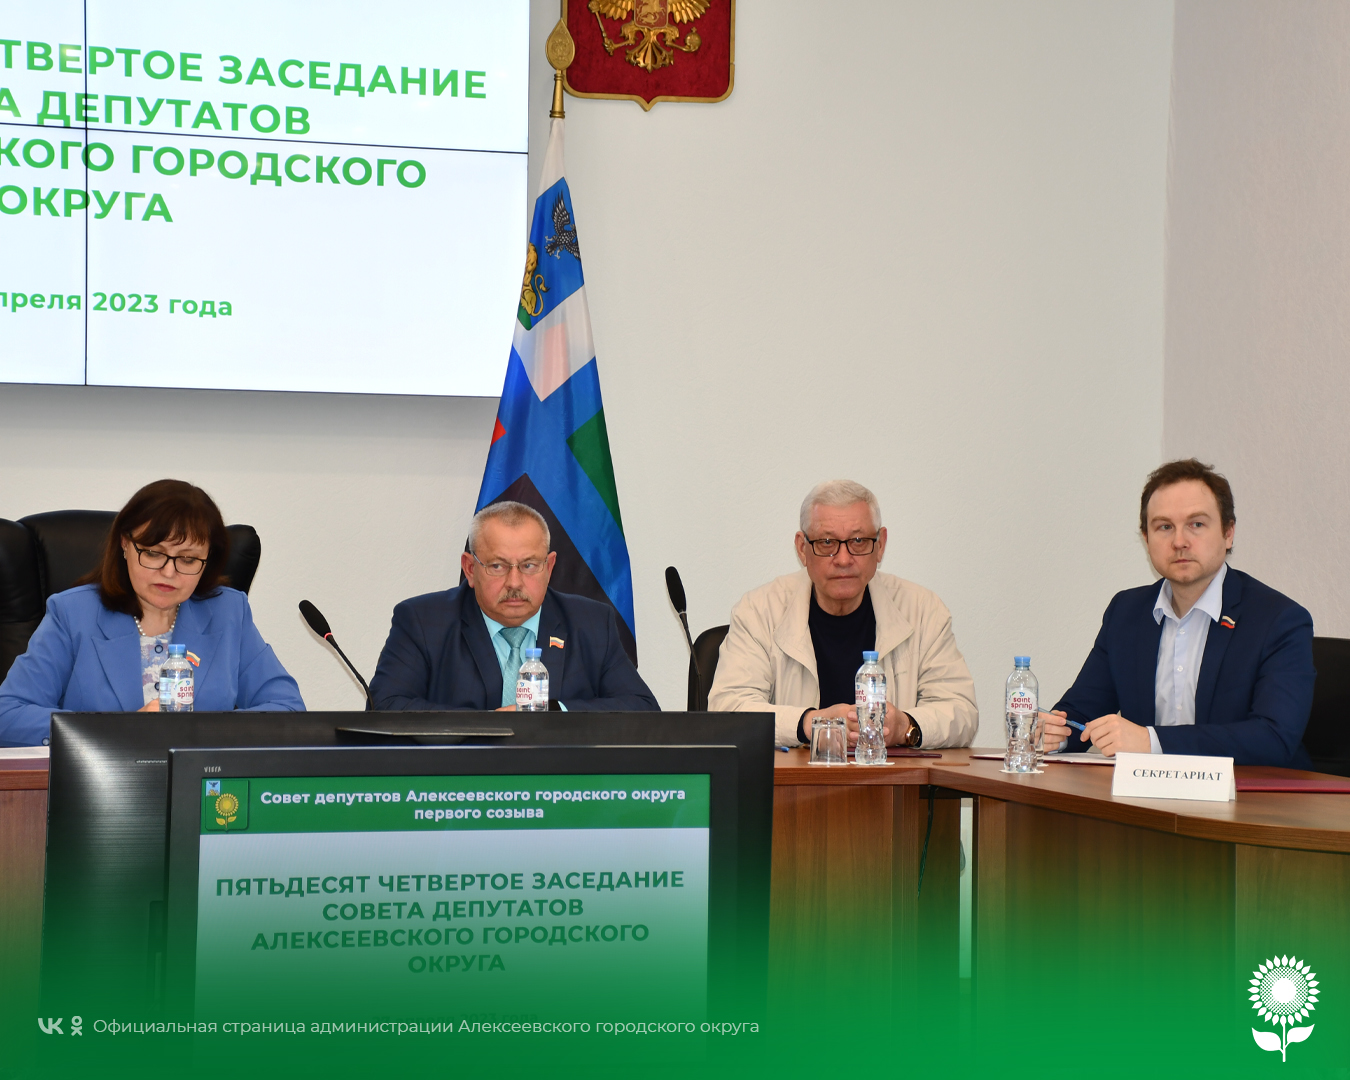 В Алексеевке состоялось пятьдесят четвертое заседание Совета депутатов